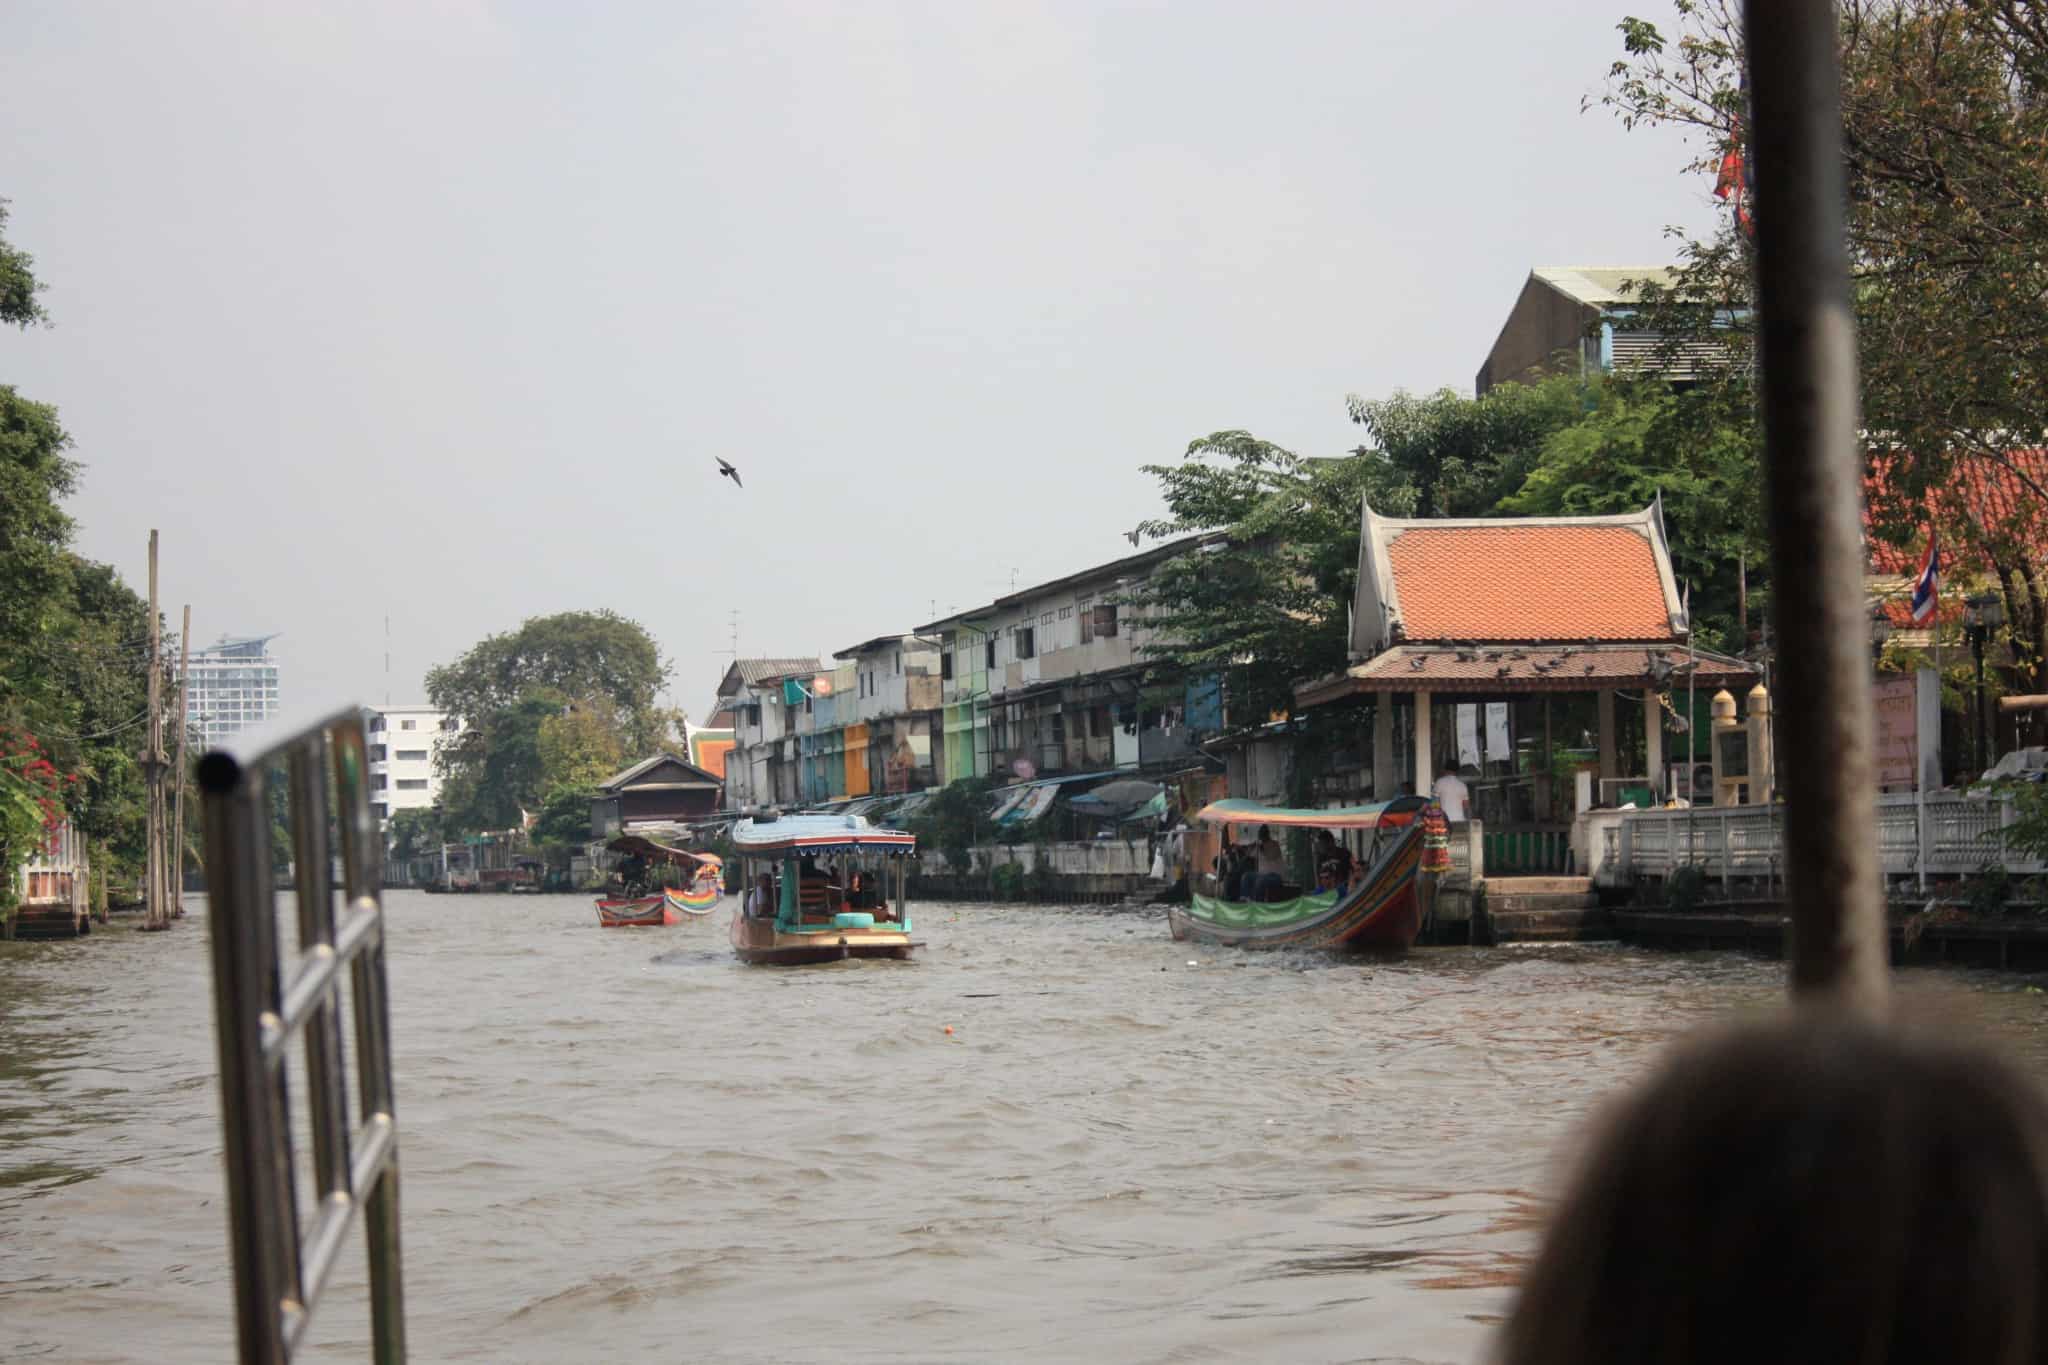 thailand travel diary #6_bangkok_chao phraya river4